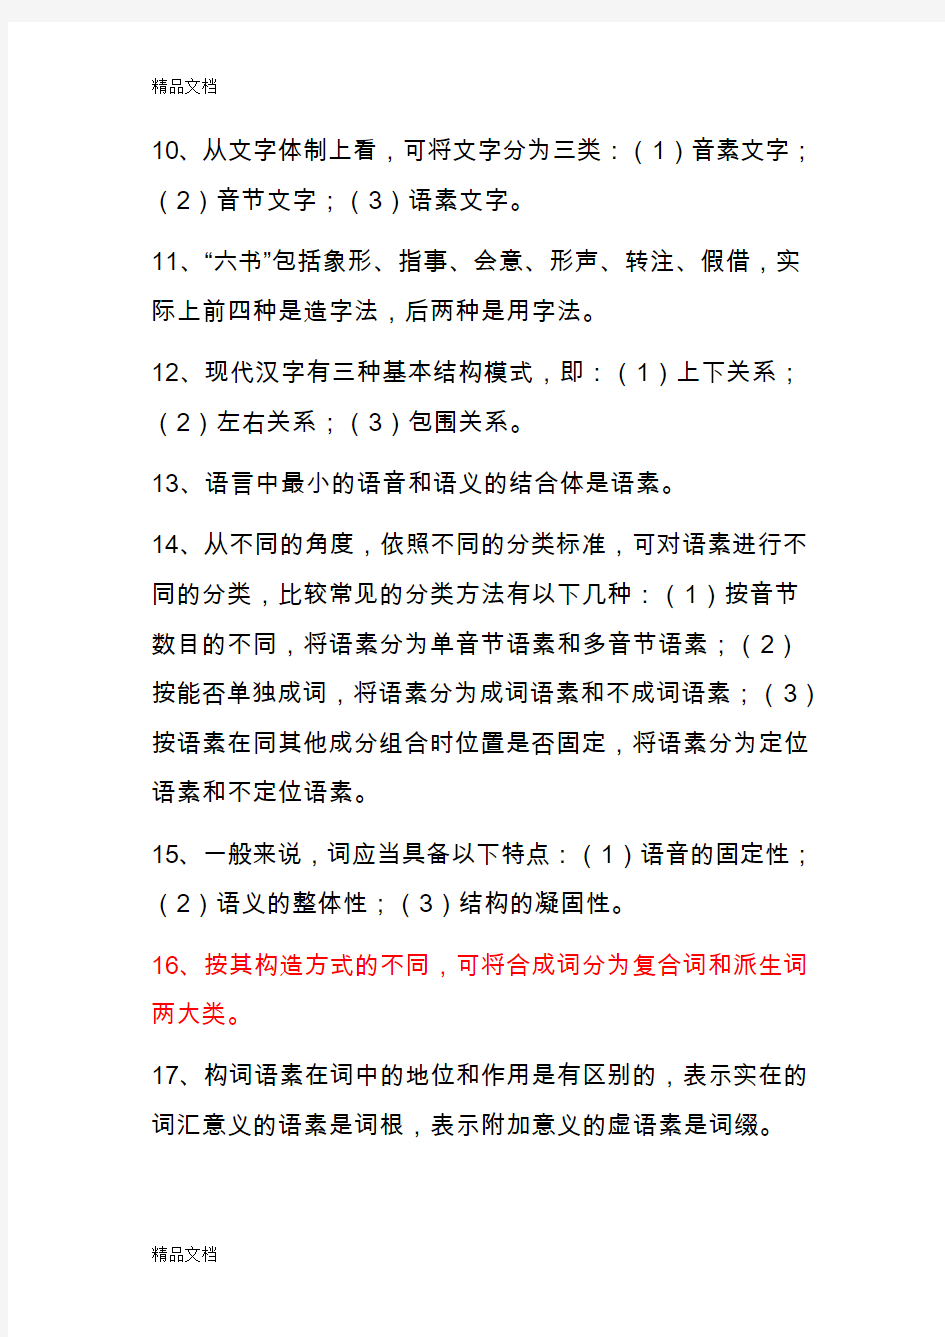 最新汉语通论形成性考核作业(标准答案)资料